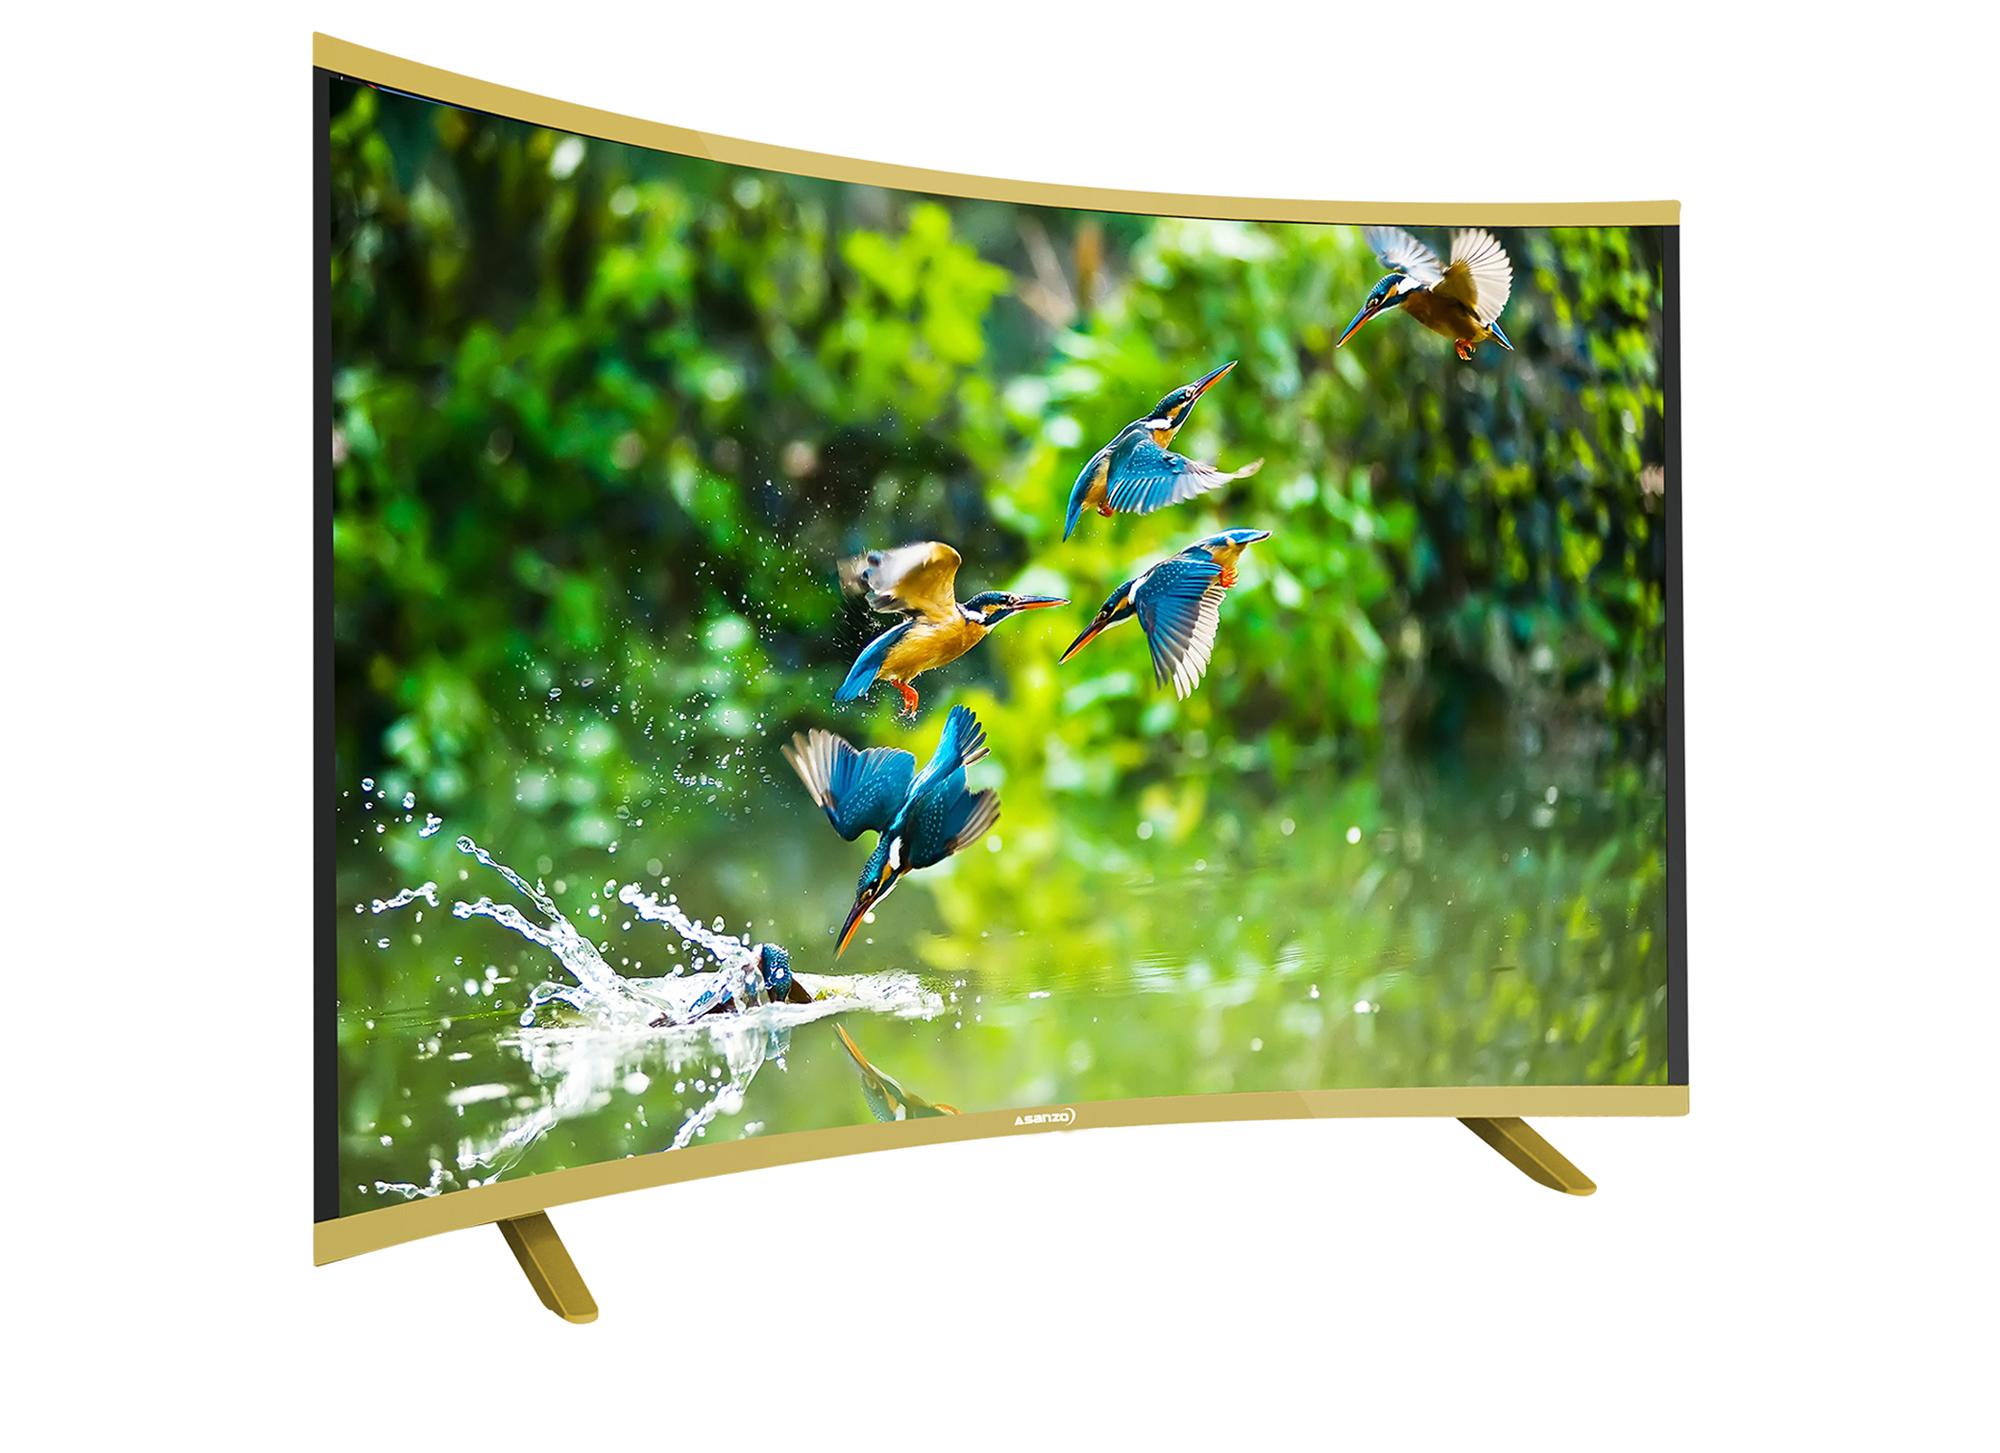 Smart TV Asanzo màn hình cong 40 inch HD - Model AS40CS6000 (Đen)